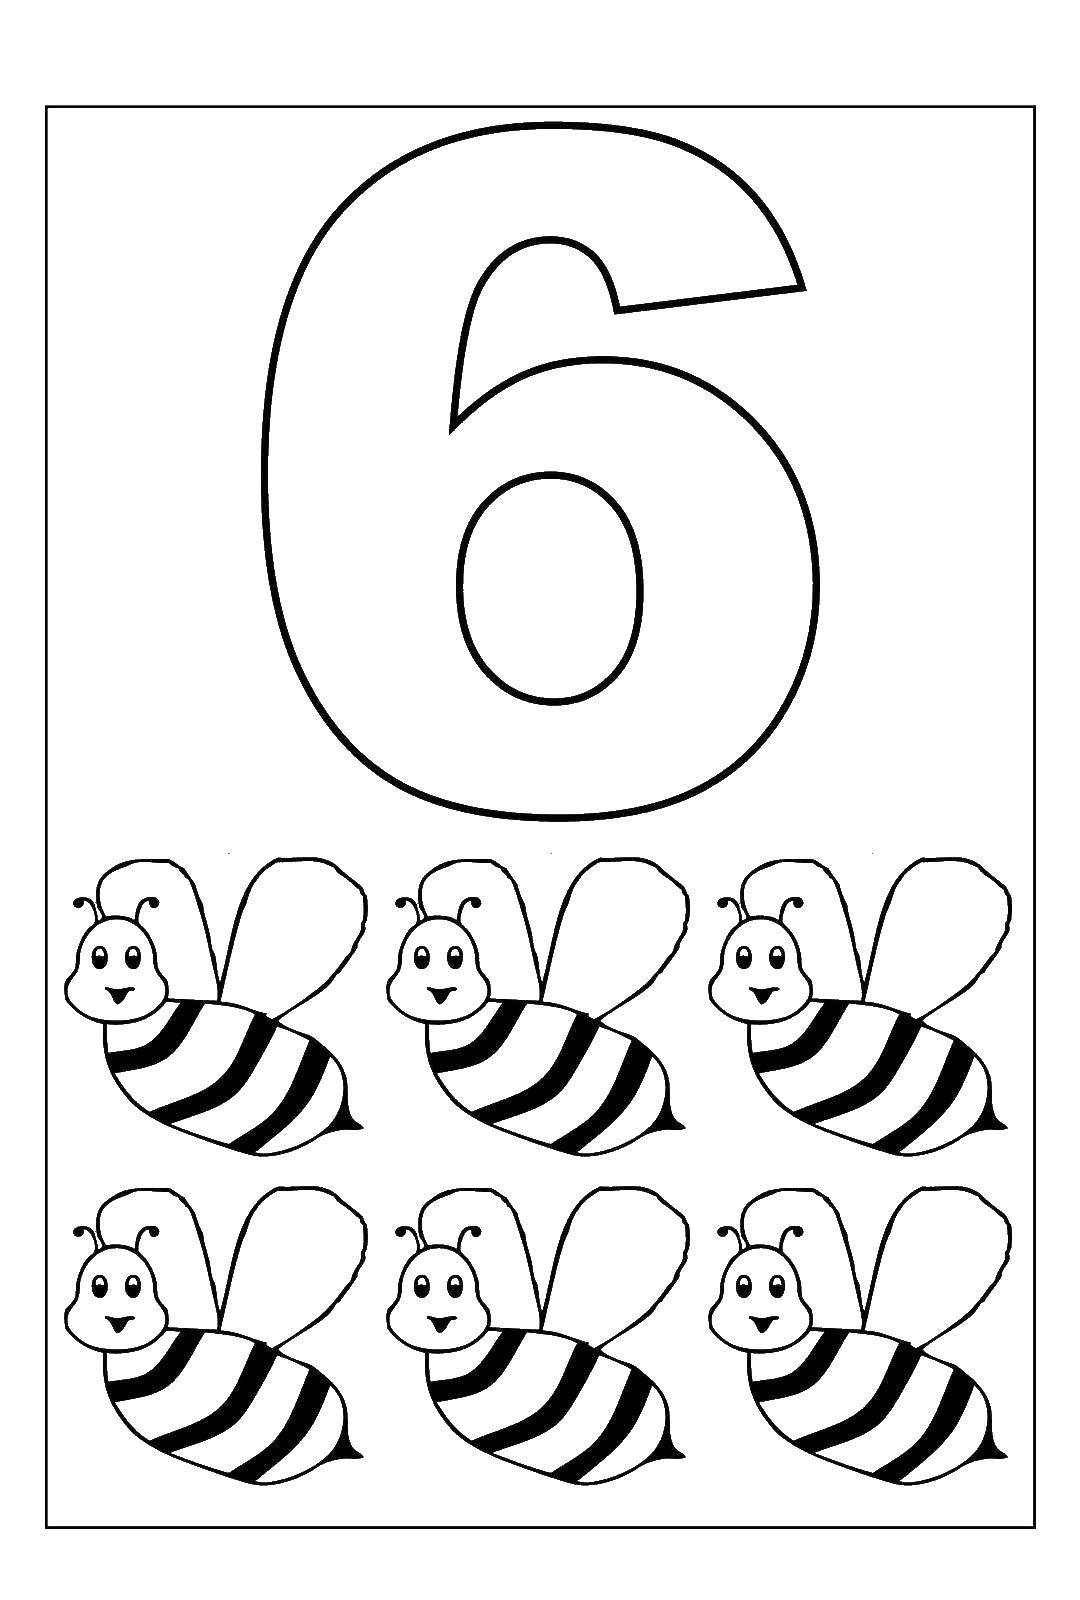   6 пчел